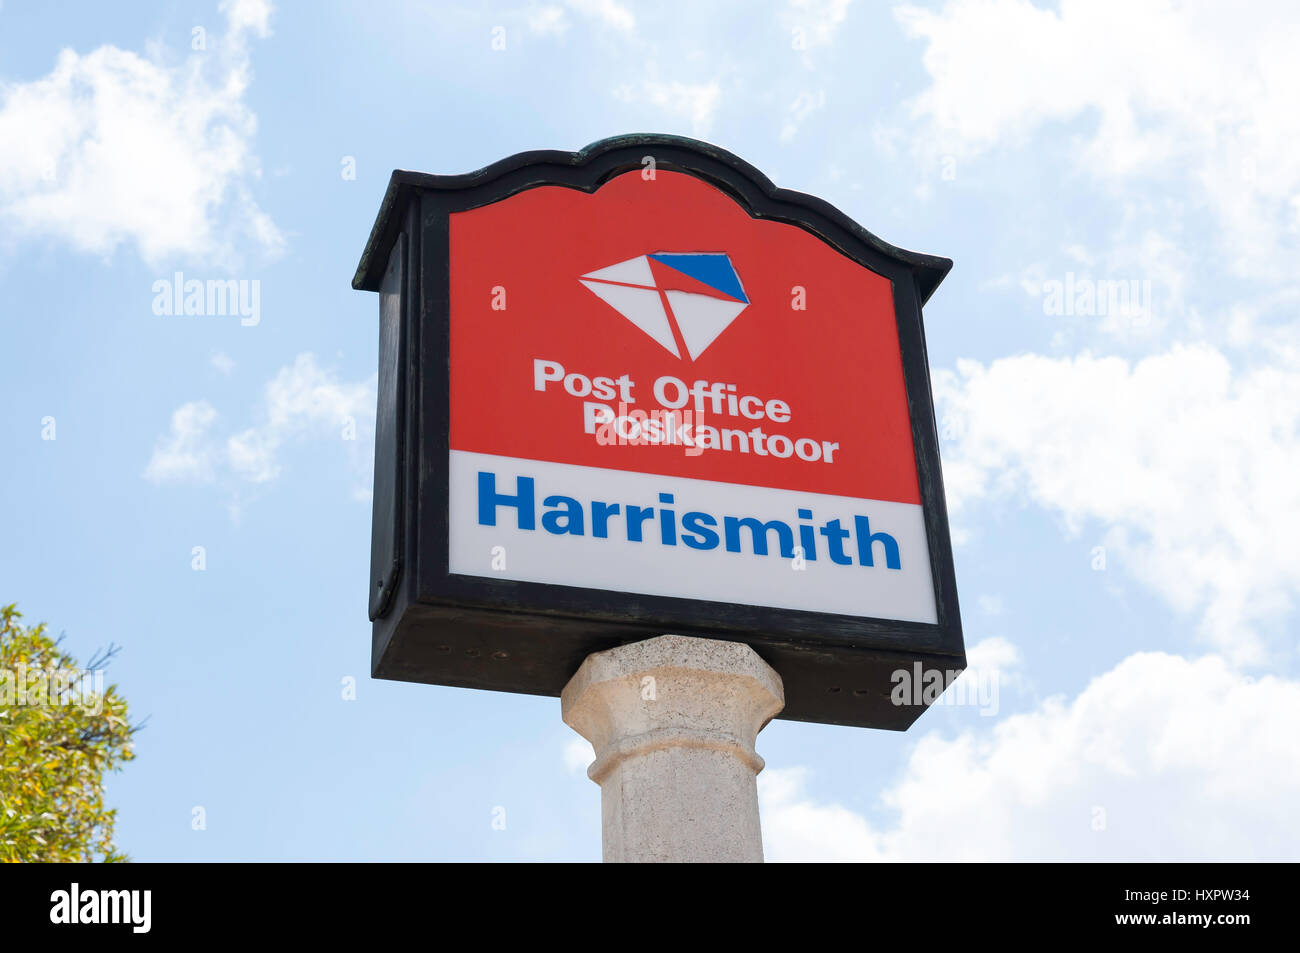 Harrison Post Office (Poskantoor) segno, Stuart Street, Harrismith, Libero Stato Provincia, Repubblica del Sud Africa Foto Stock